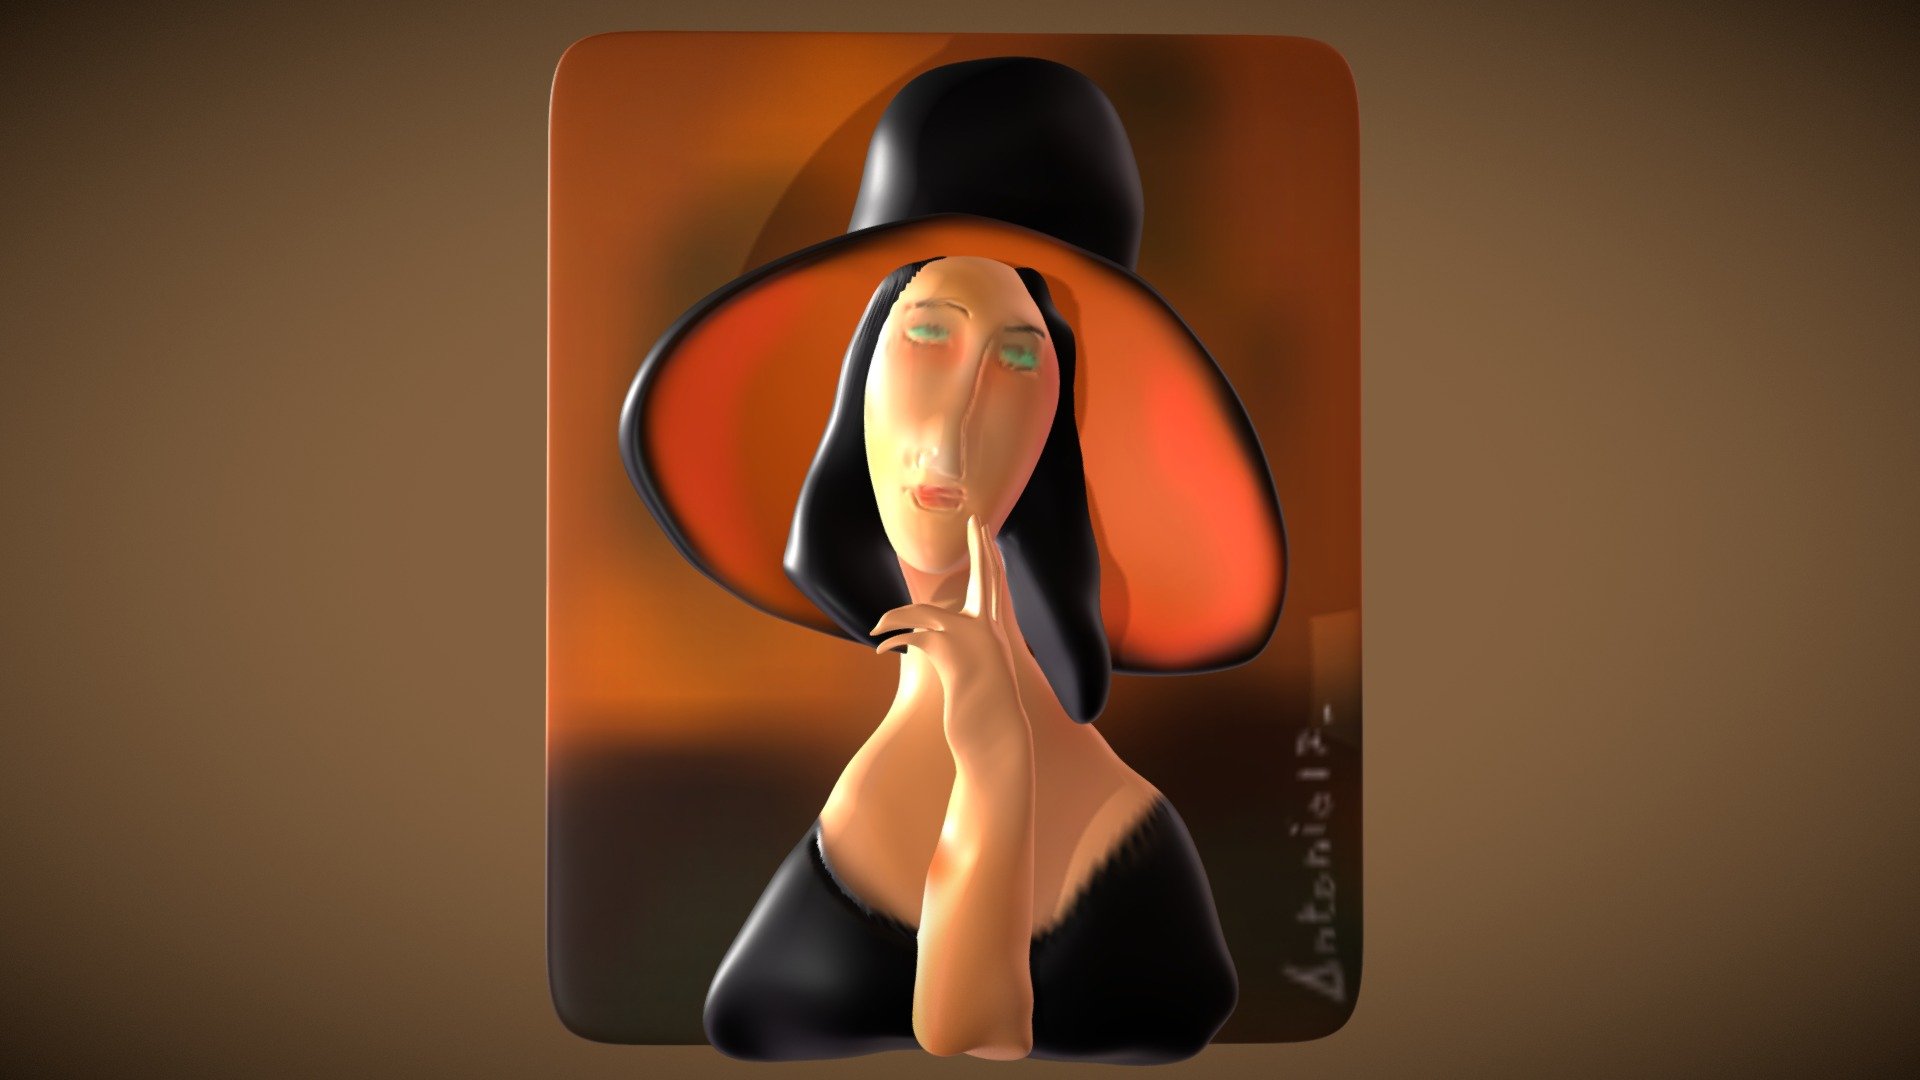 Amedeo MODIGLIANI   Jeanne Hebuterne CON CAPPELLO - Modigliani -  Jeanne Hebuterne CON CAPPELLO - Buy Royalty Free 3D model by antoniorafanelli 3d model